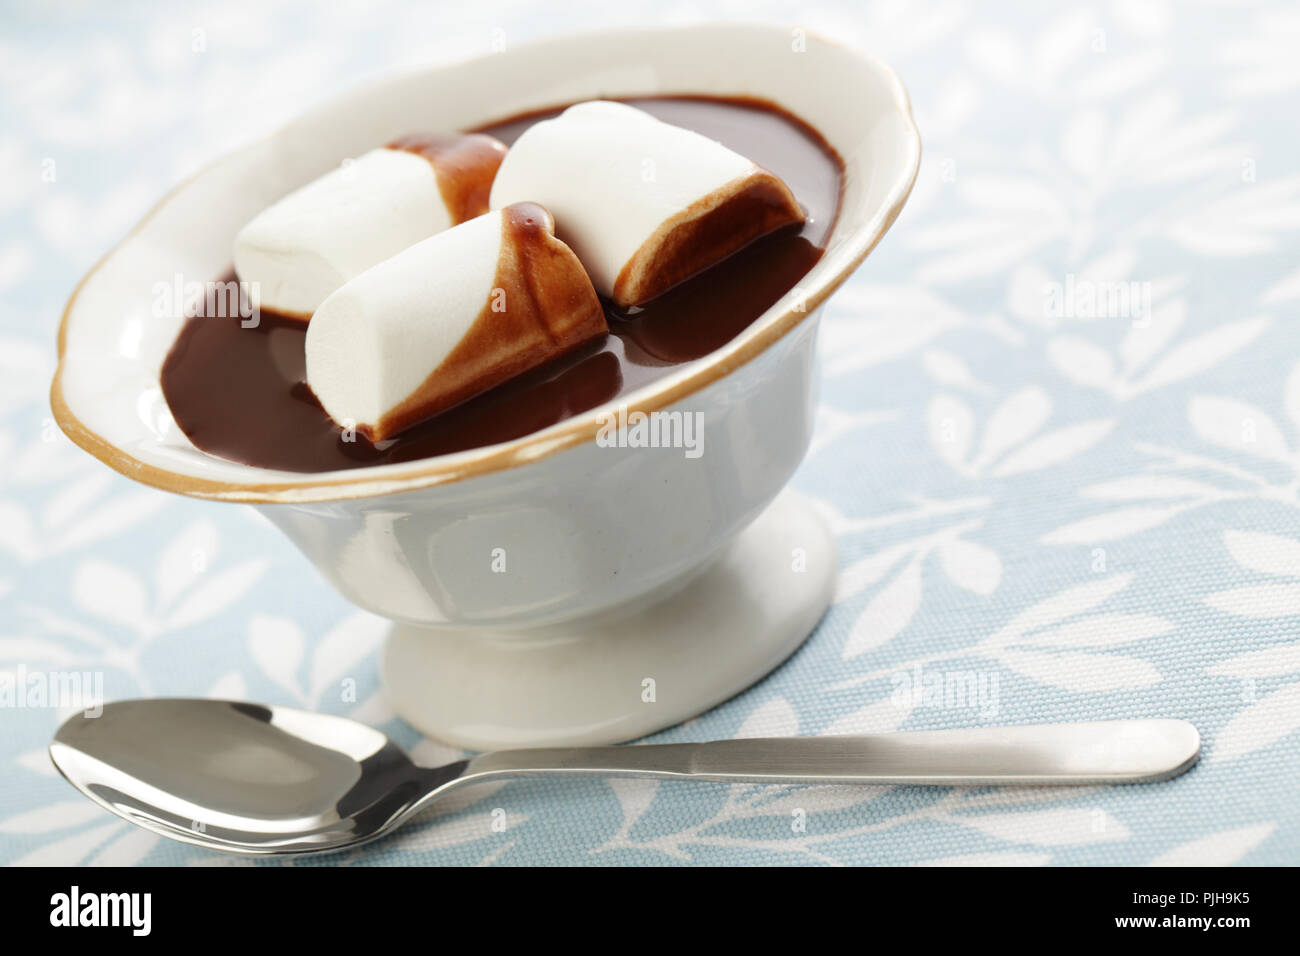 Chocolate caliente con malvavisco blanco en el recipiente Foto de stock